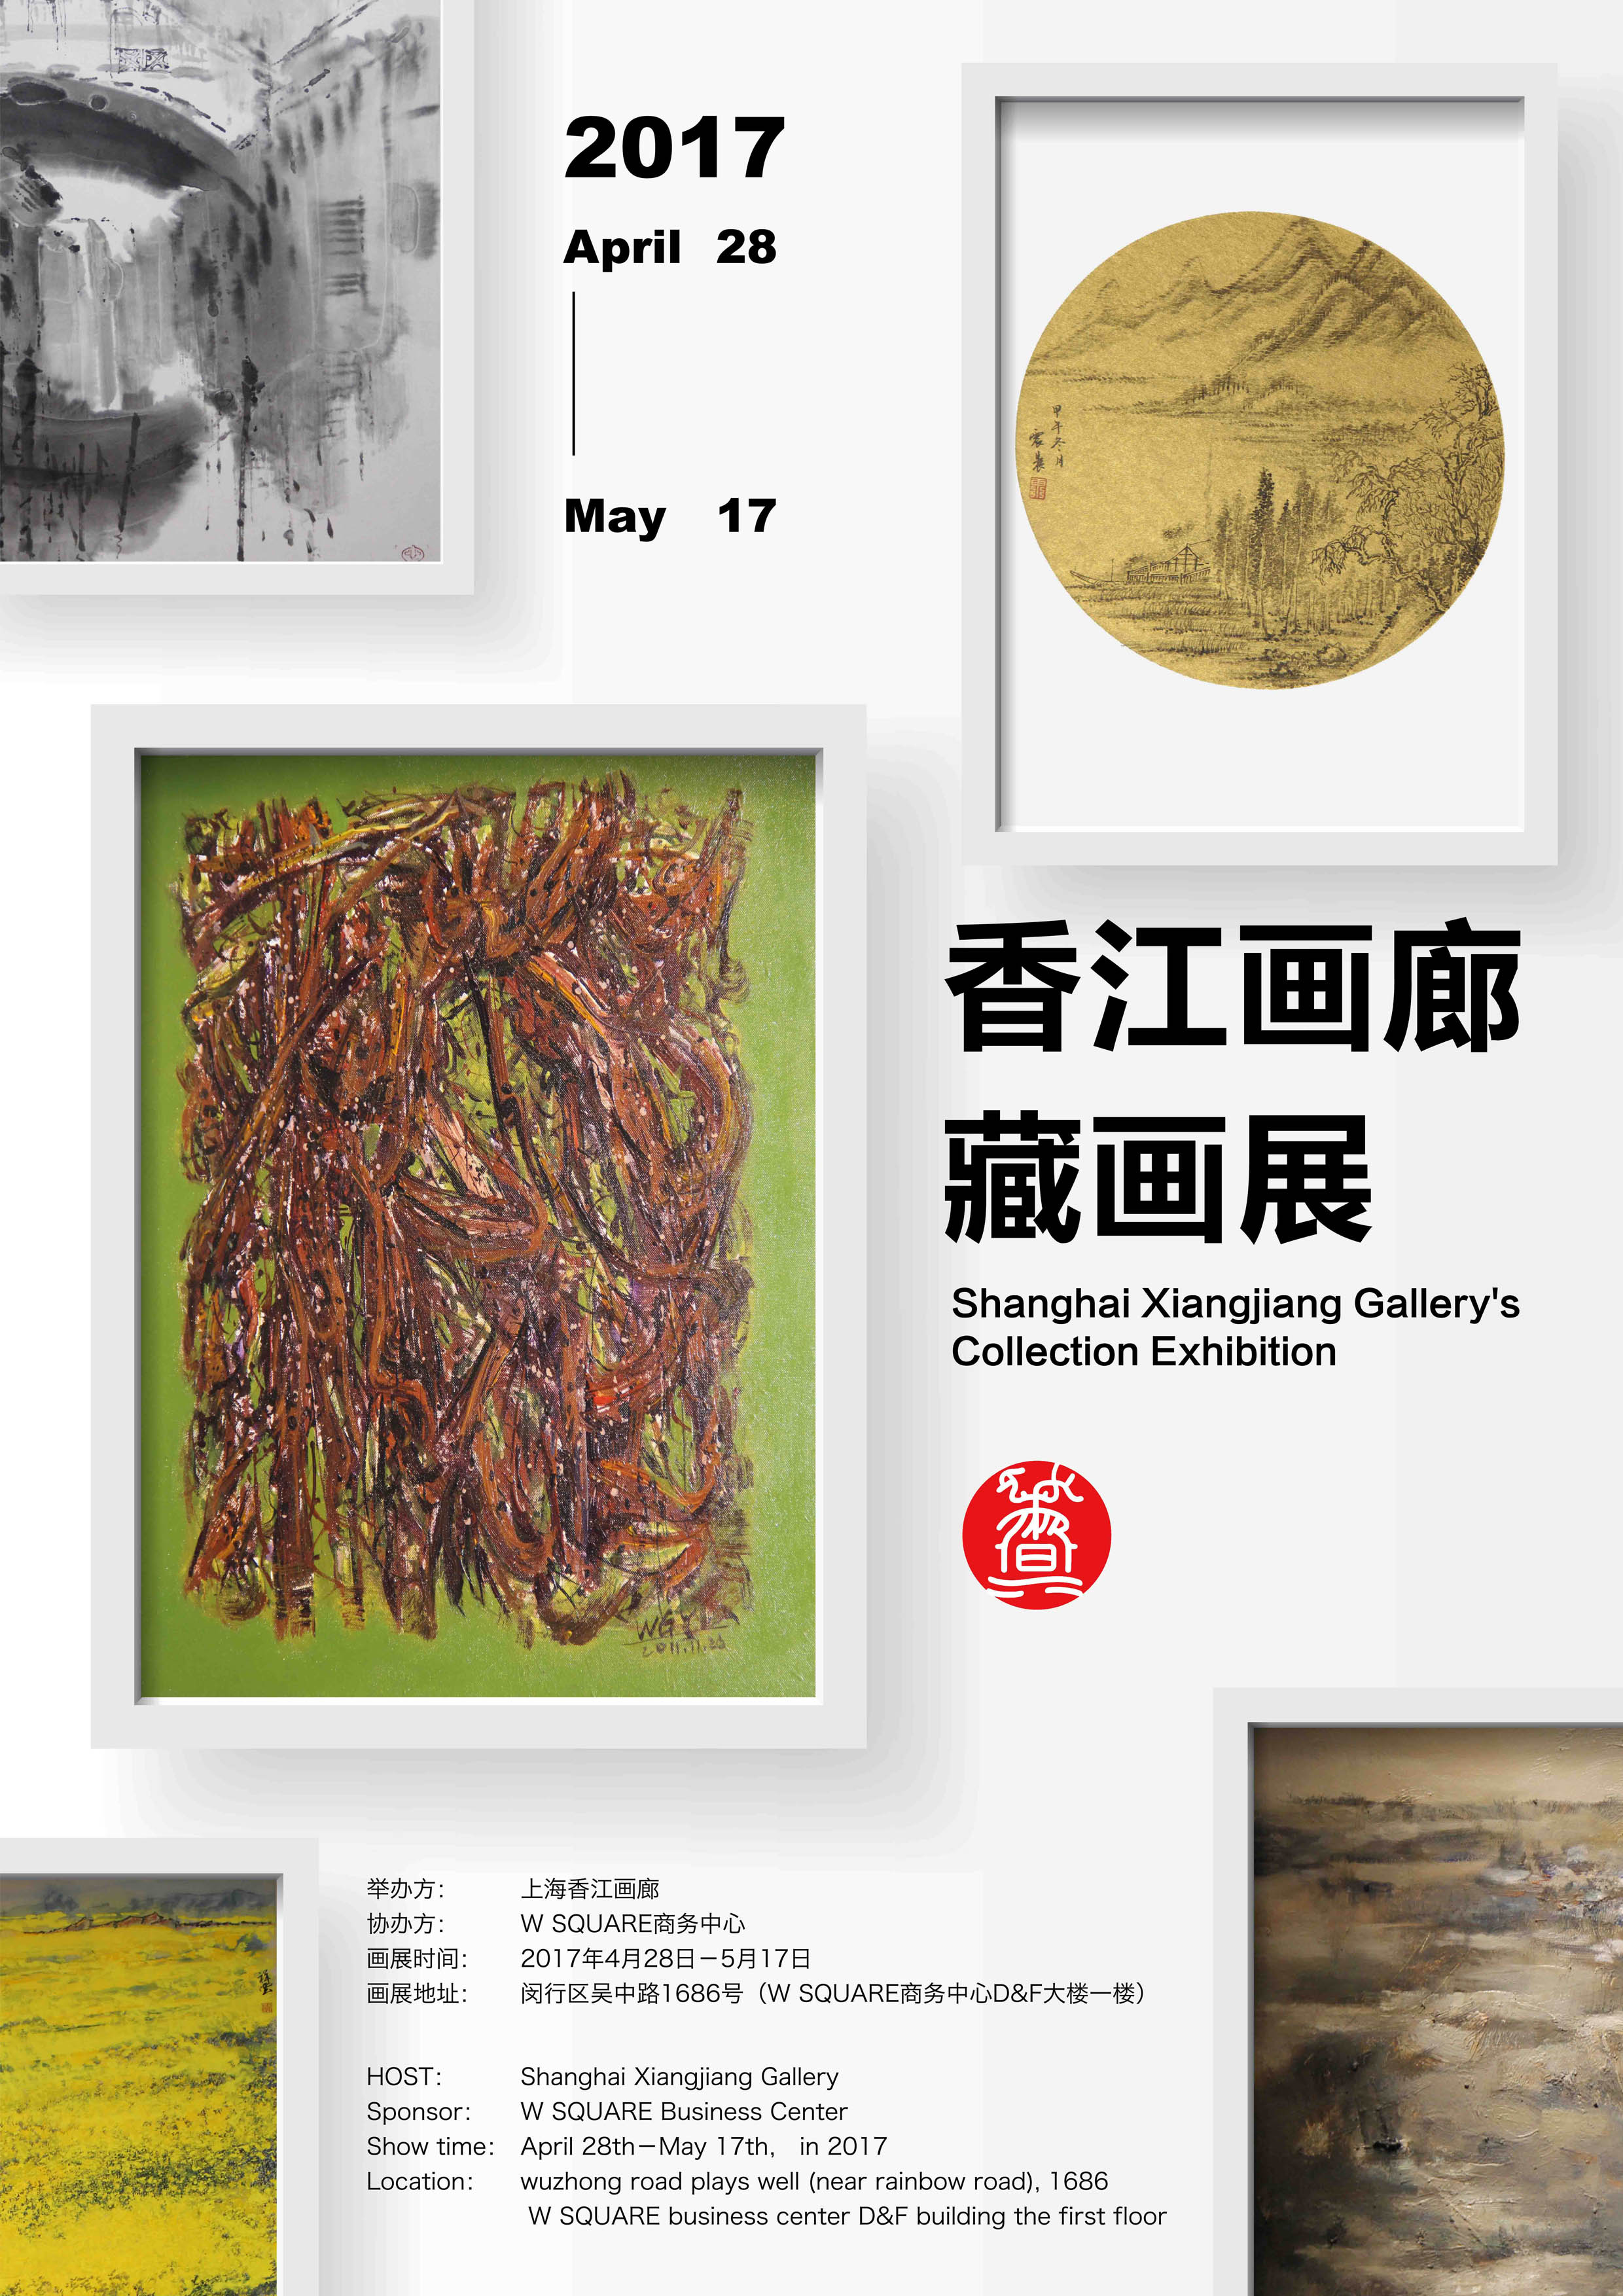 上海香江画廊藏画展